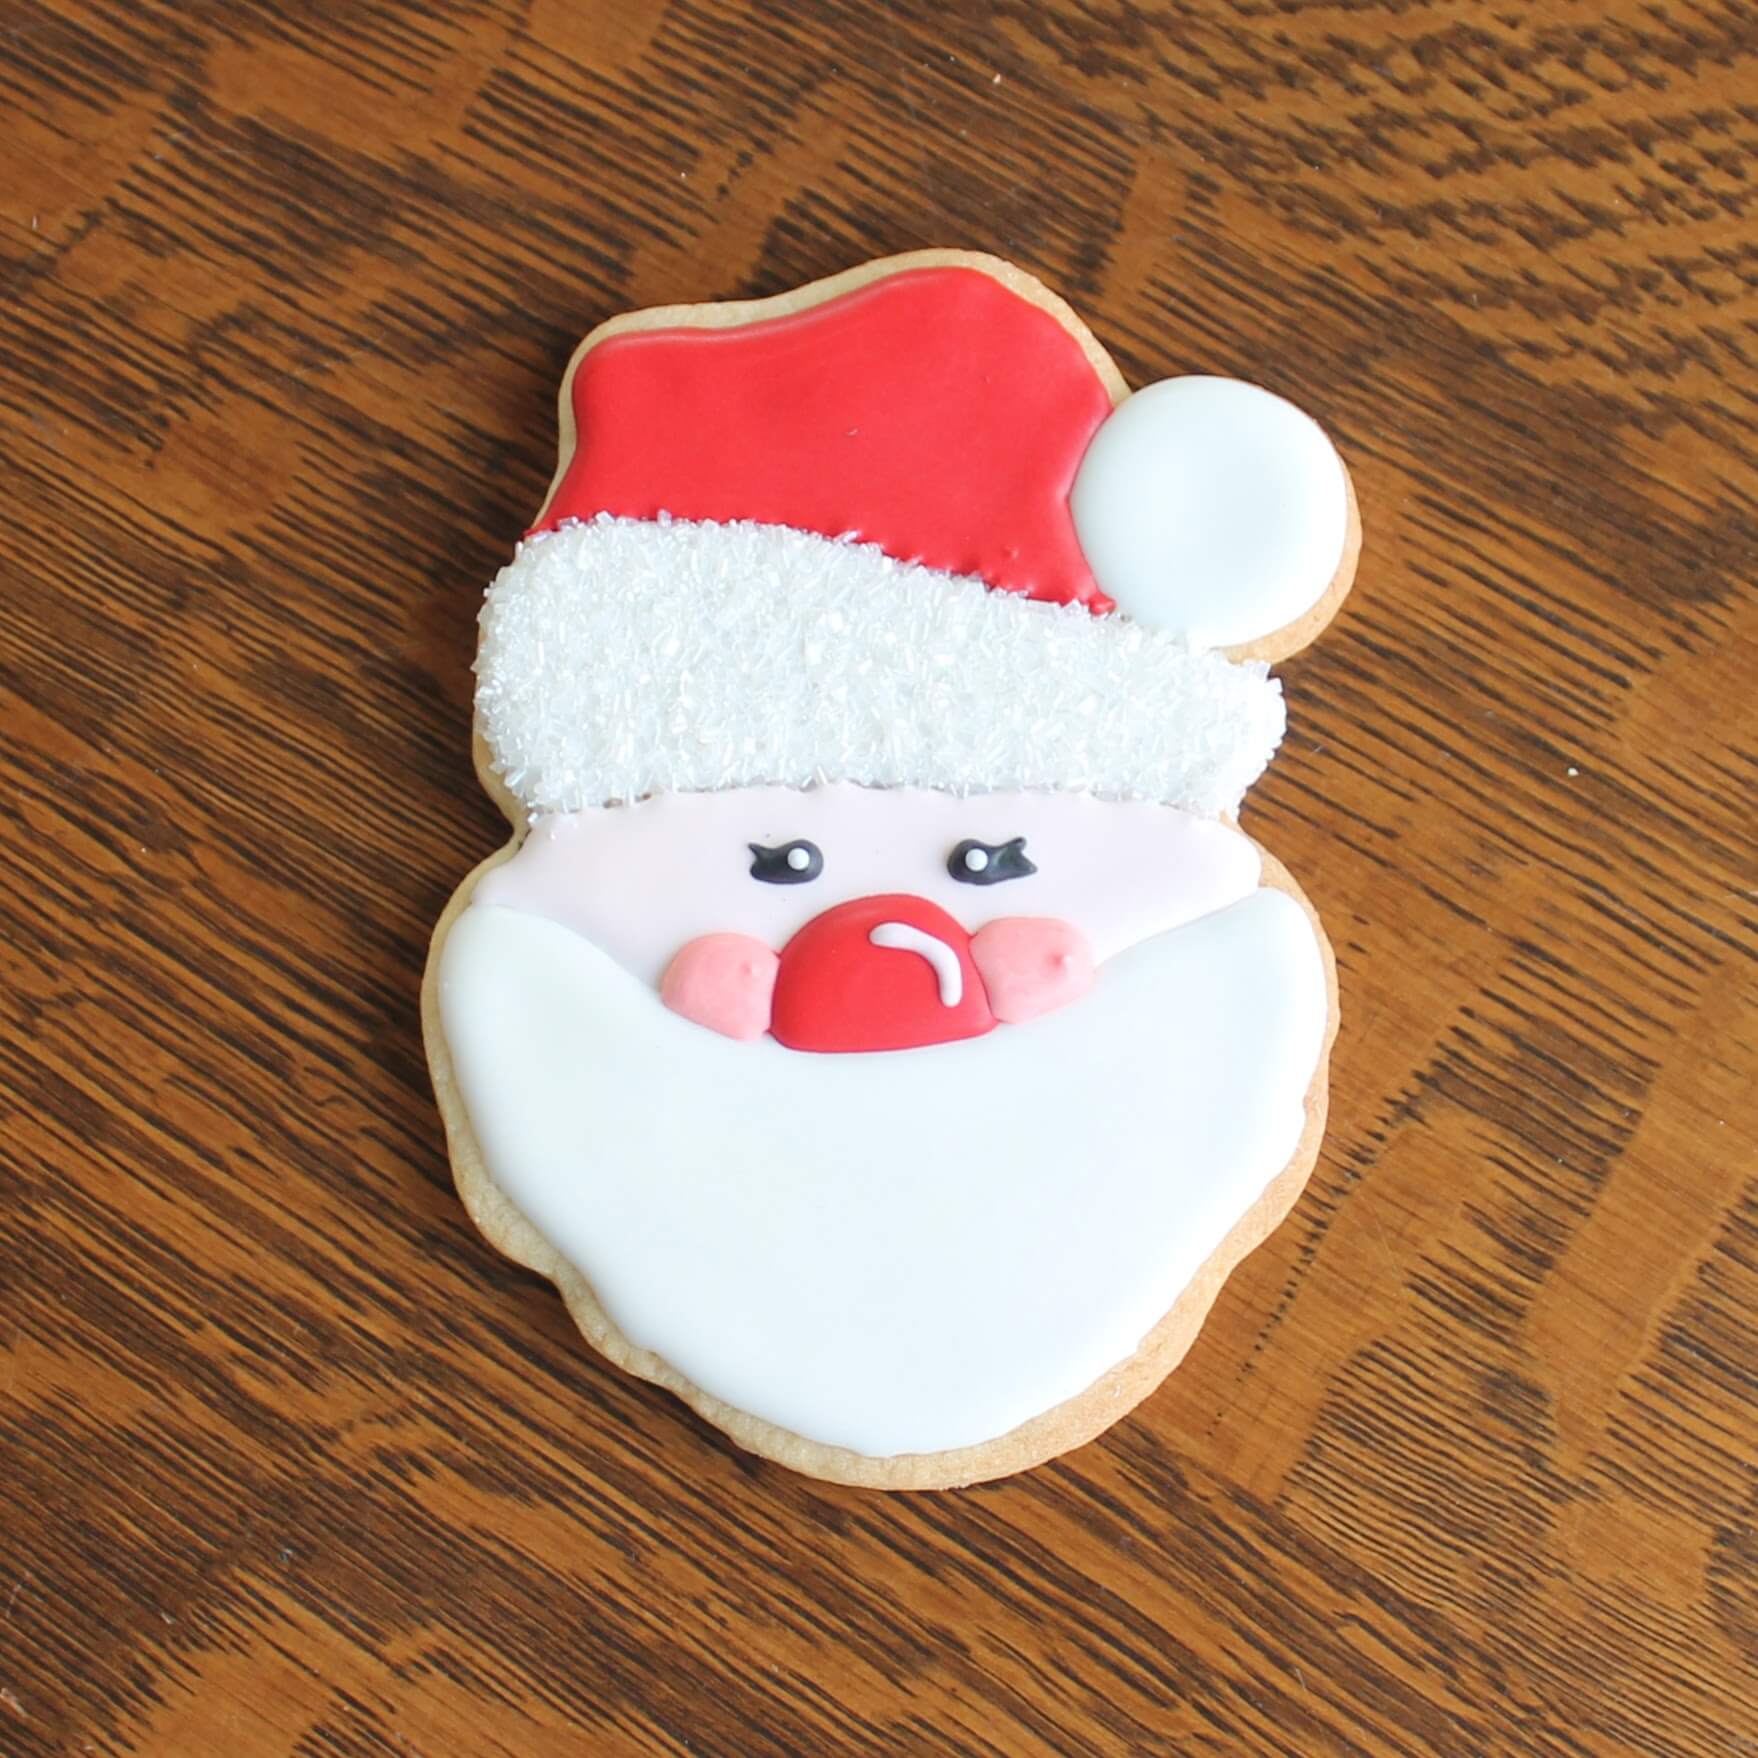 Santa sugar cookies